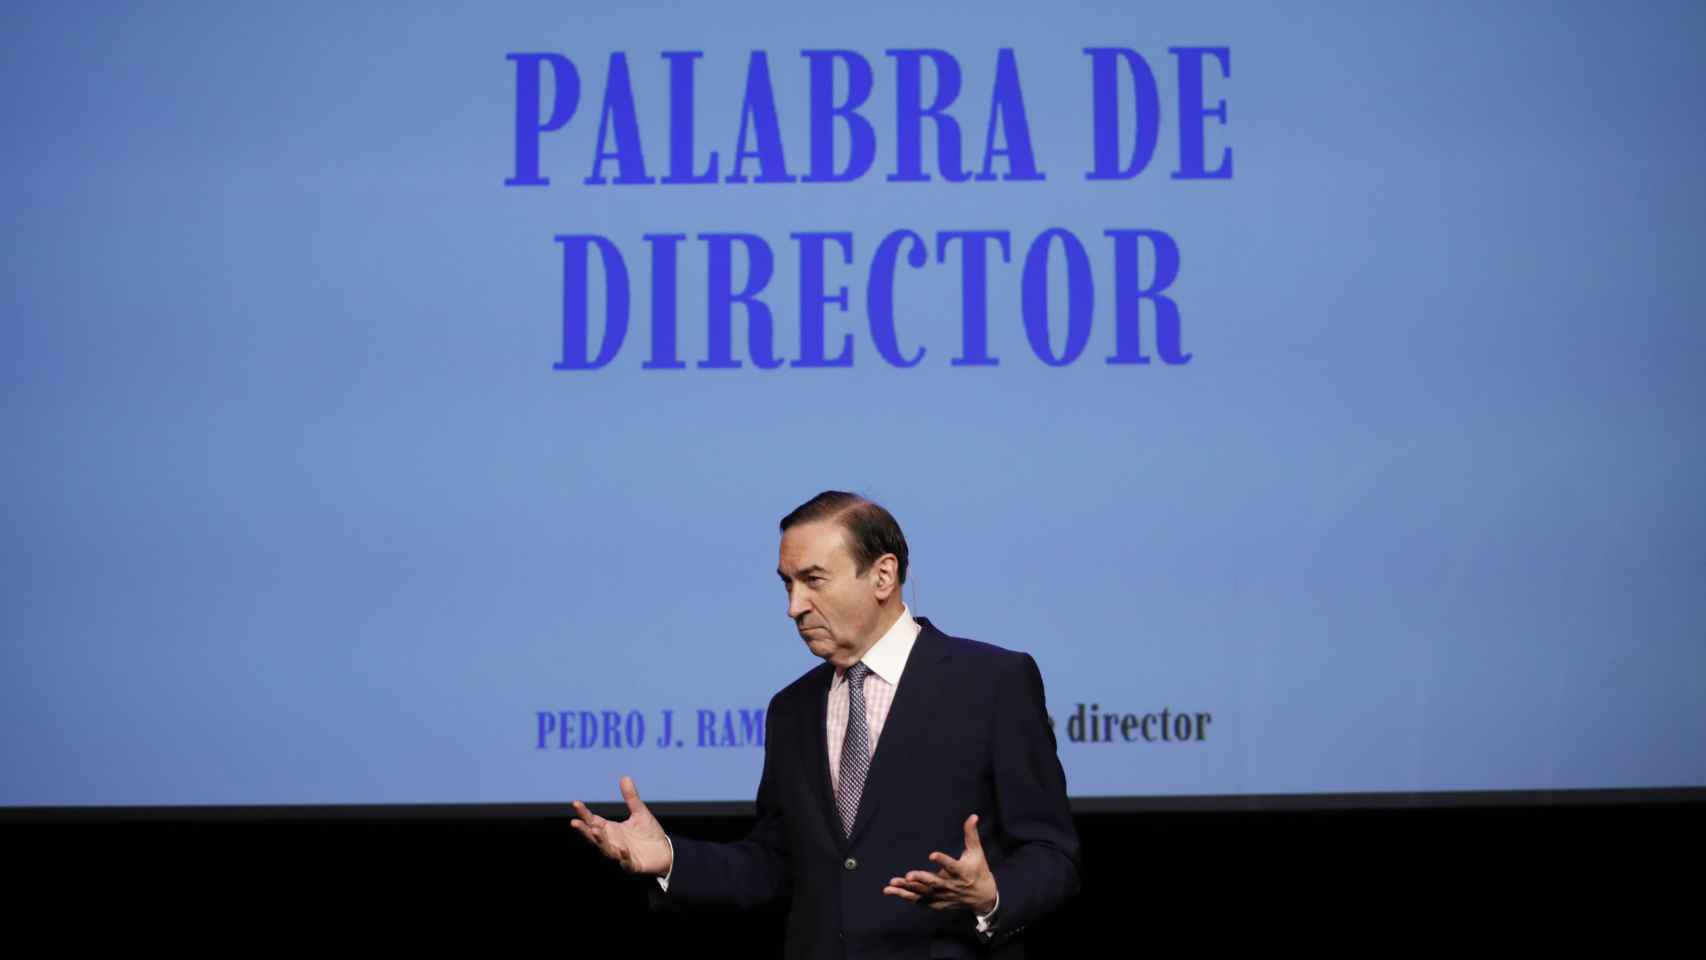 Pedro J. presenta en Madrid 'Palabra de director', el primer volumen de sus memorias